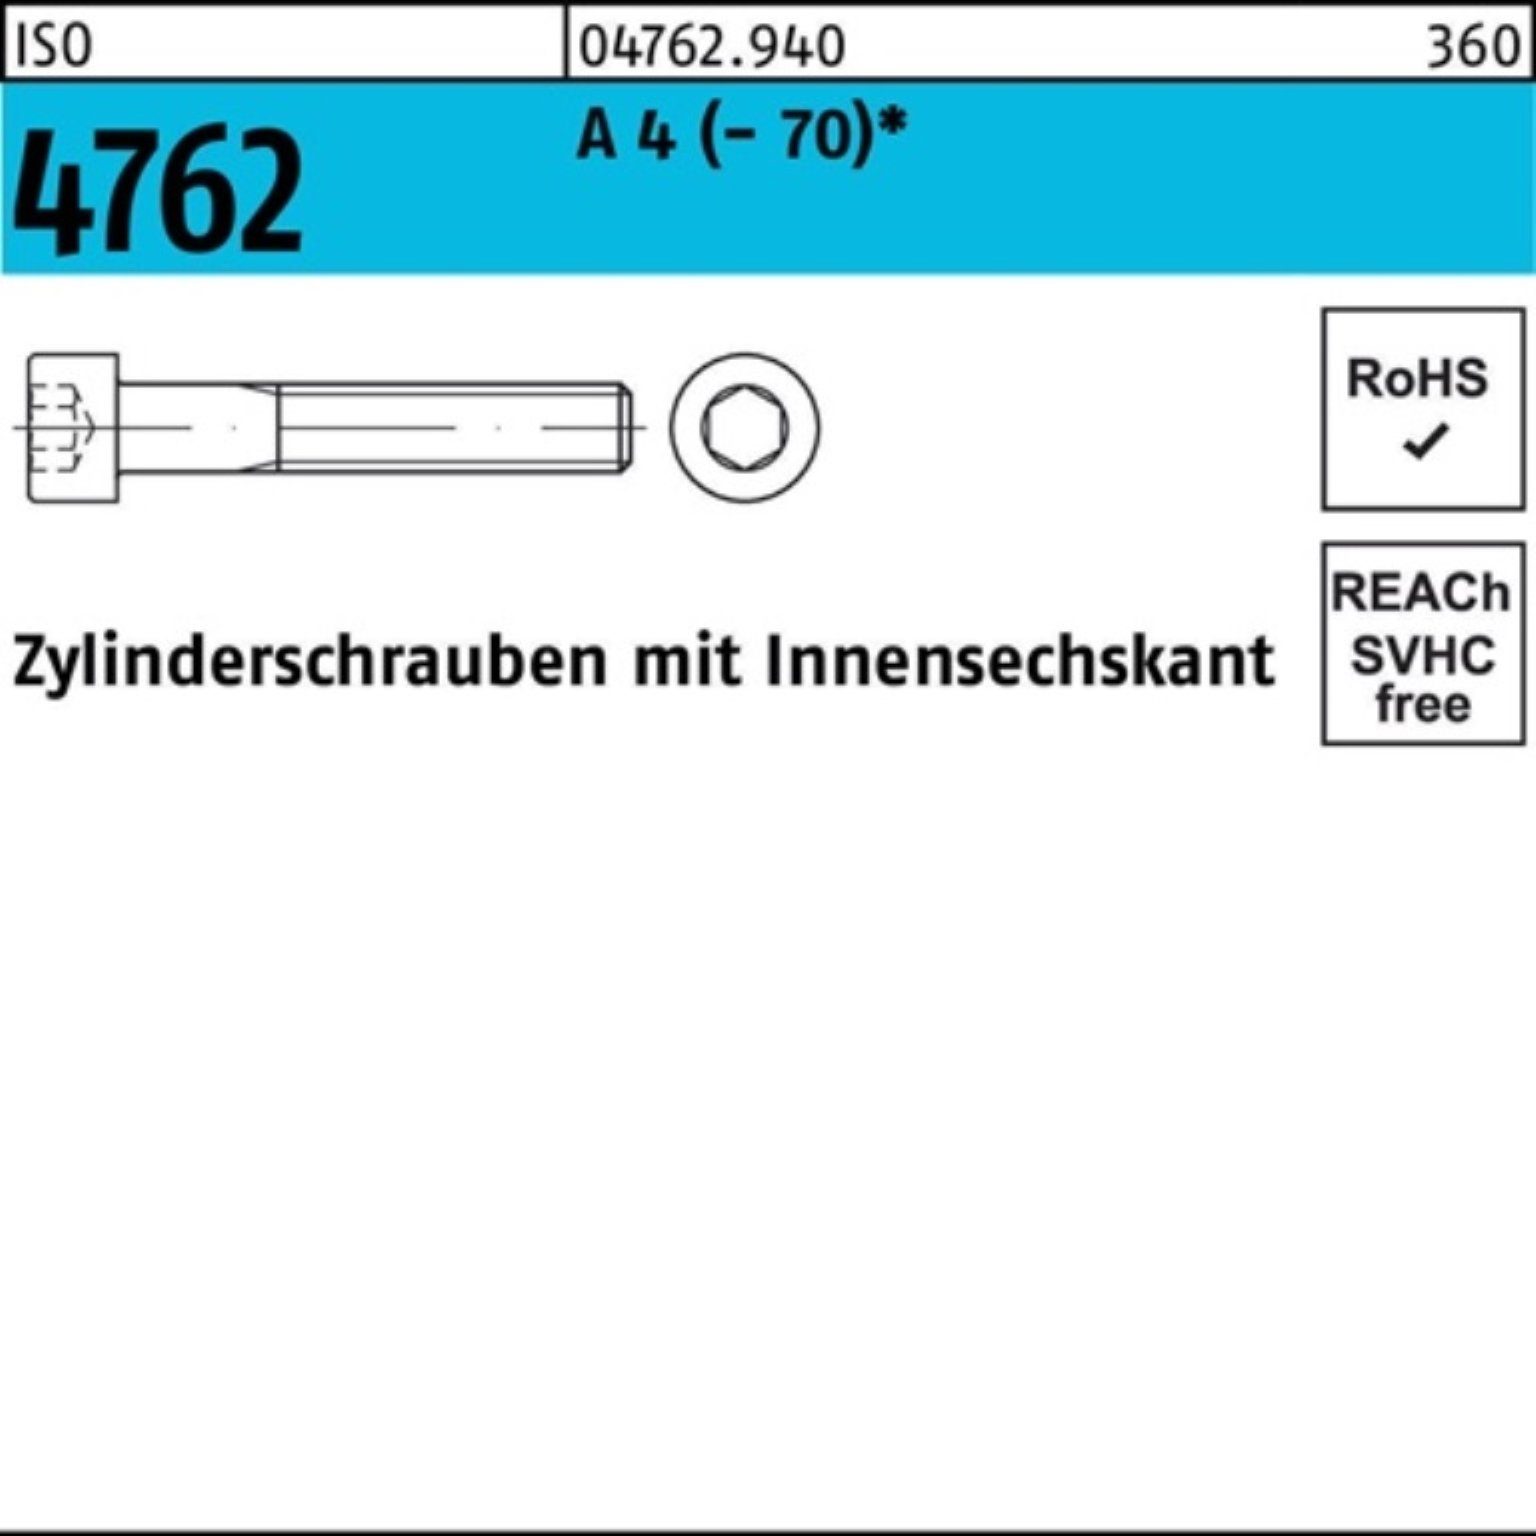 4 500 500er I ISO Zylinderschraube Stück Reyher Innen-6kt 30 A 4762 M4x Zylinderschraube Pack